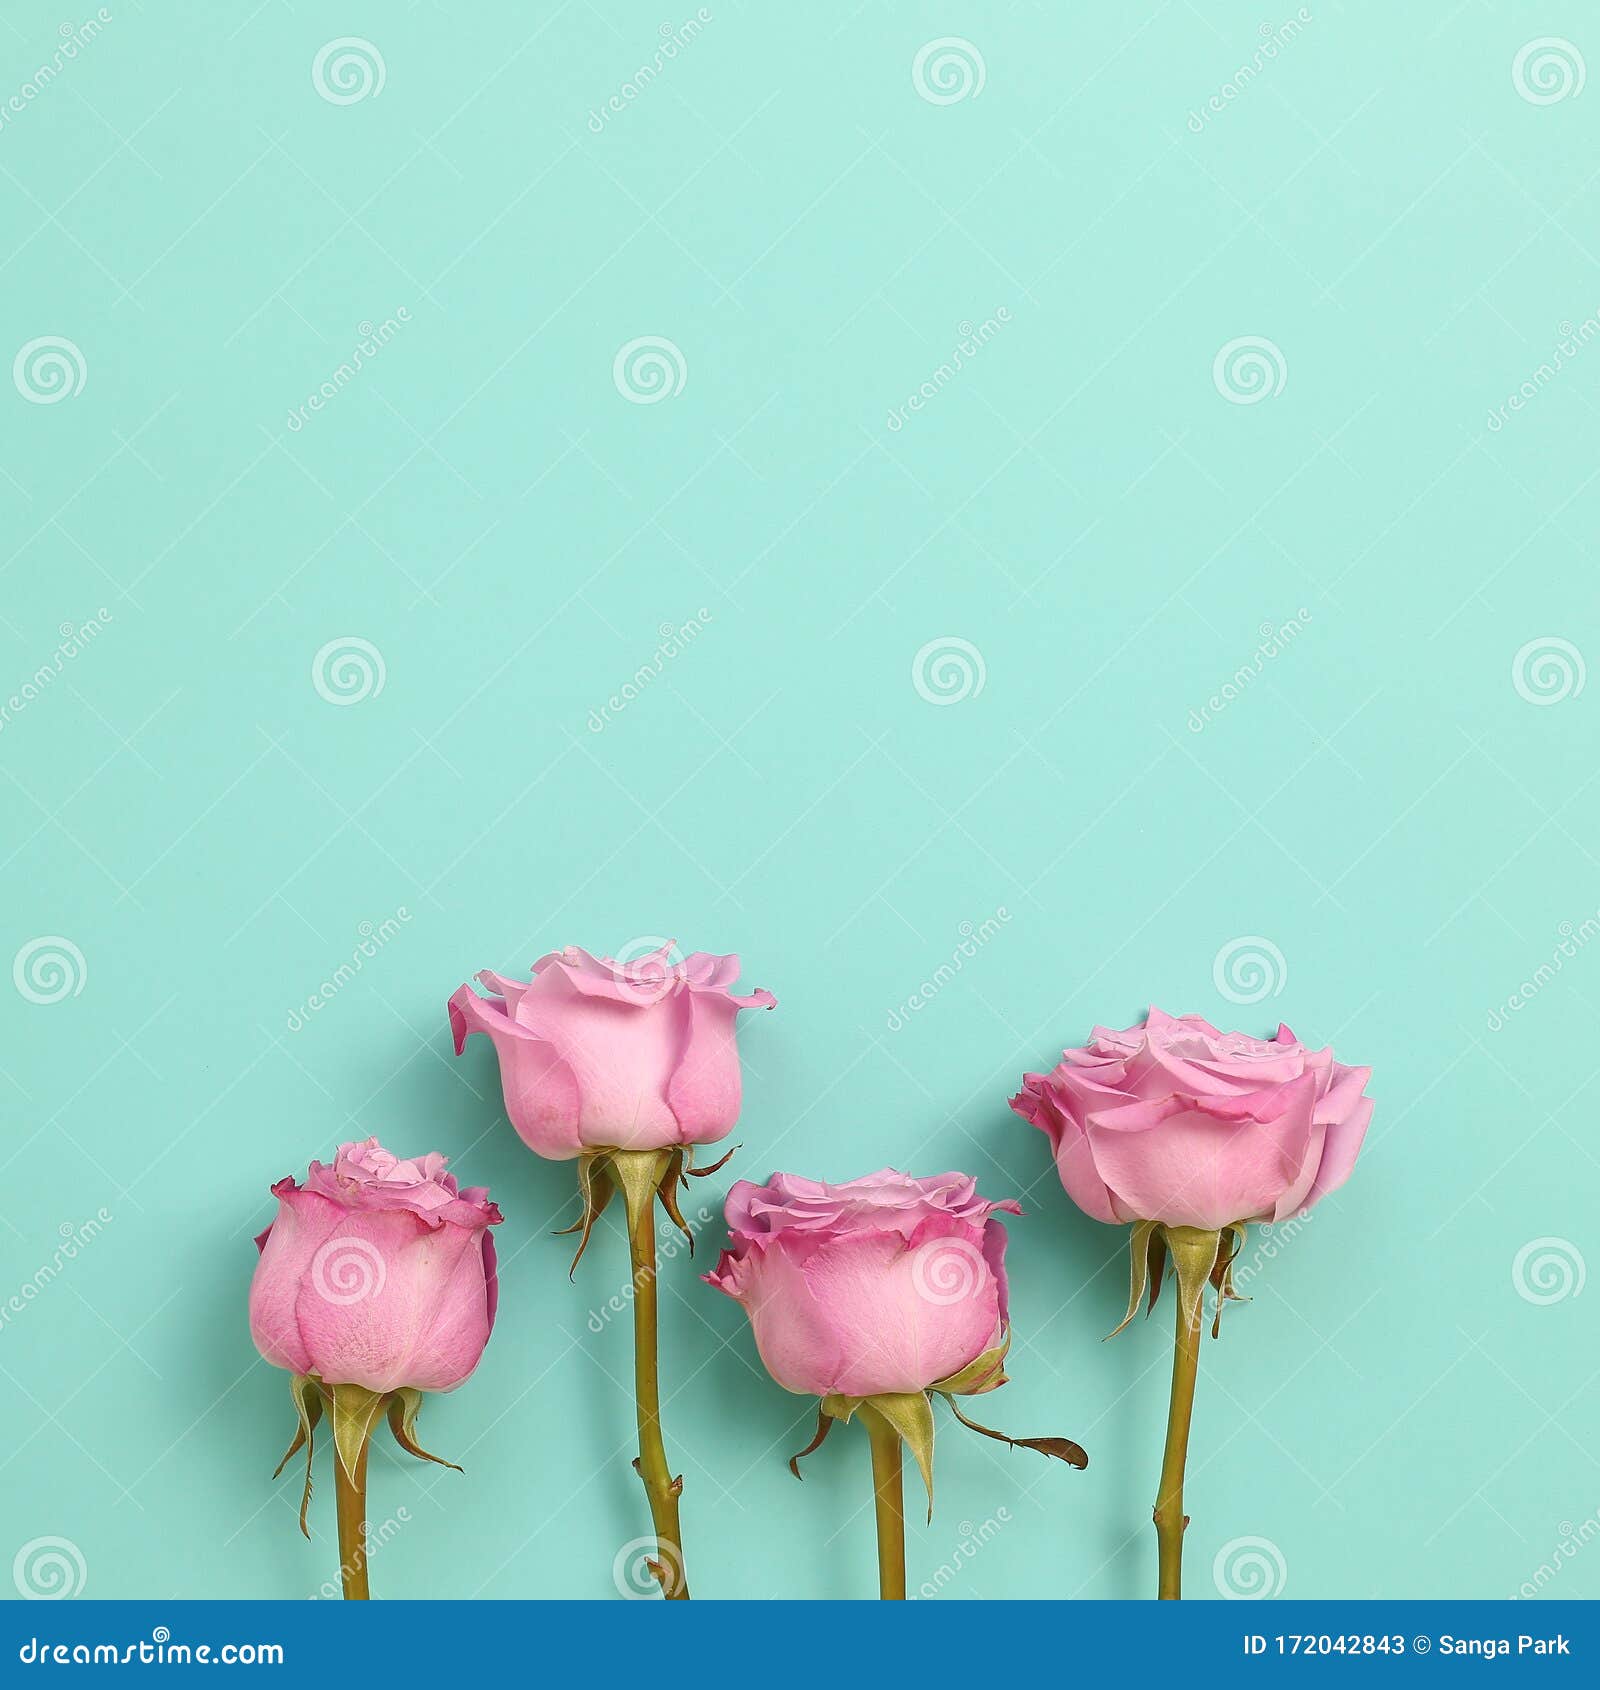 Đôi cánh hoa hồng tím và hồng nhạt tràn đầy sự nữ tính và dịu dàng xinh đẹp. Hãy ngắm nhìn chúng để cảm nhận sự ấm áp trong trái tim.